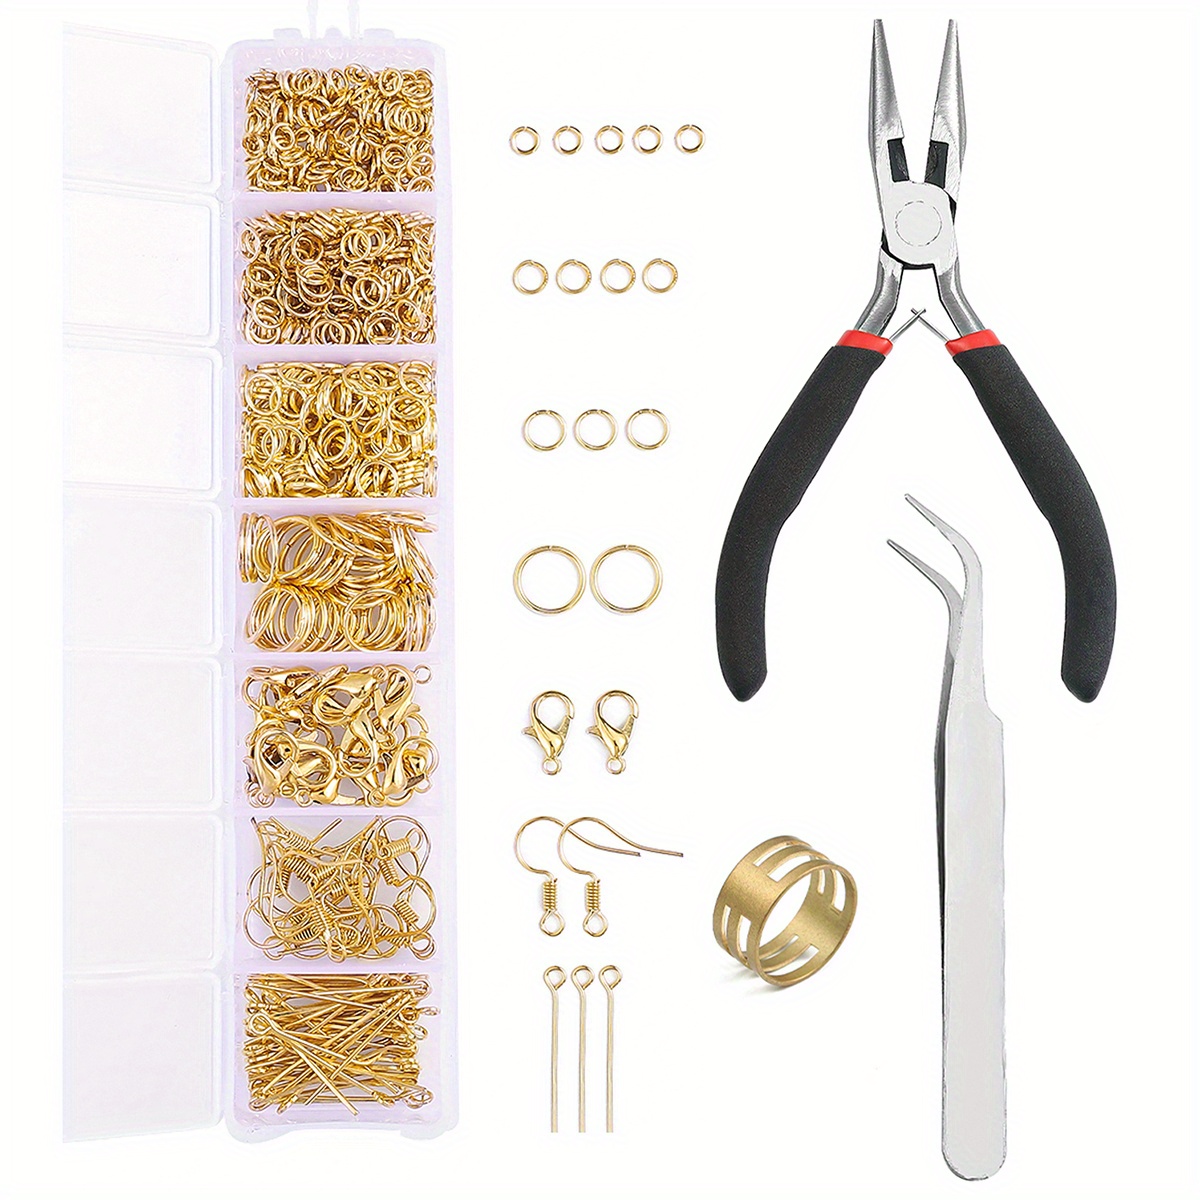 Wire Jewelry Making Repair Tools Supplies Kit Craft Tweezers Bracelet Tool